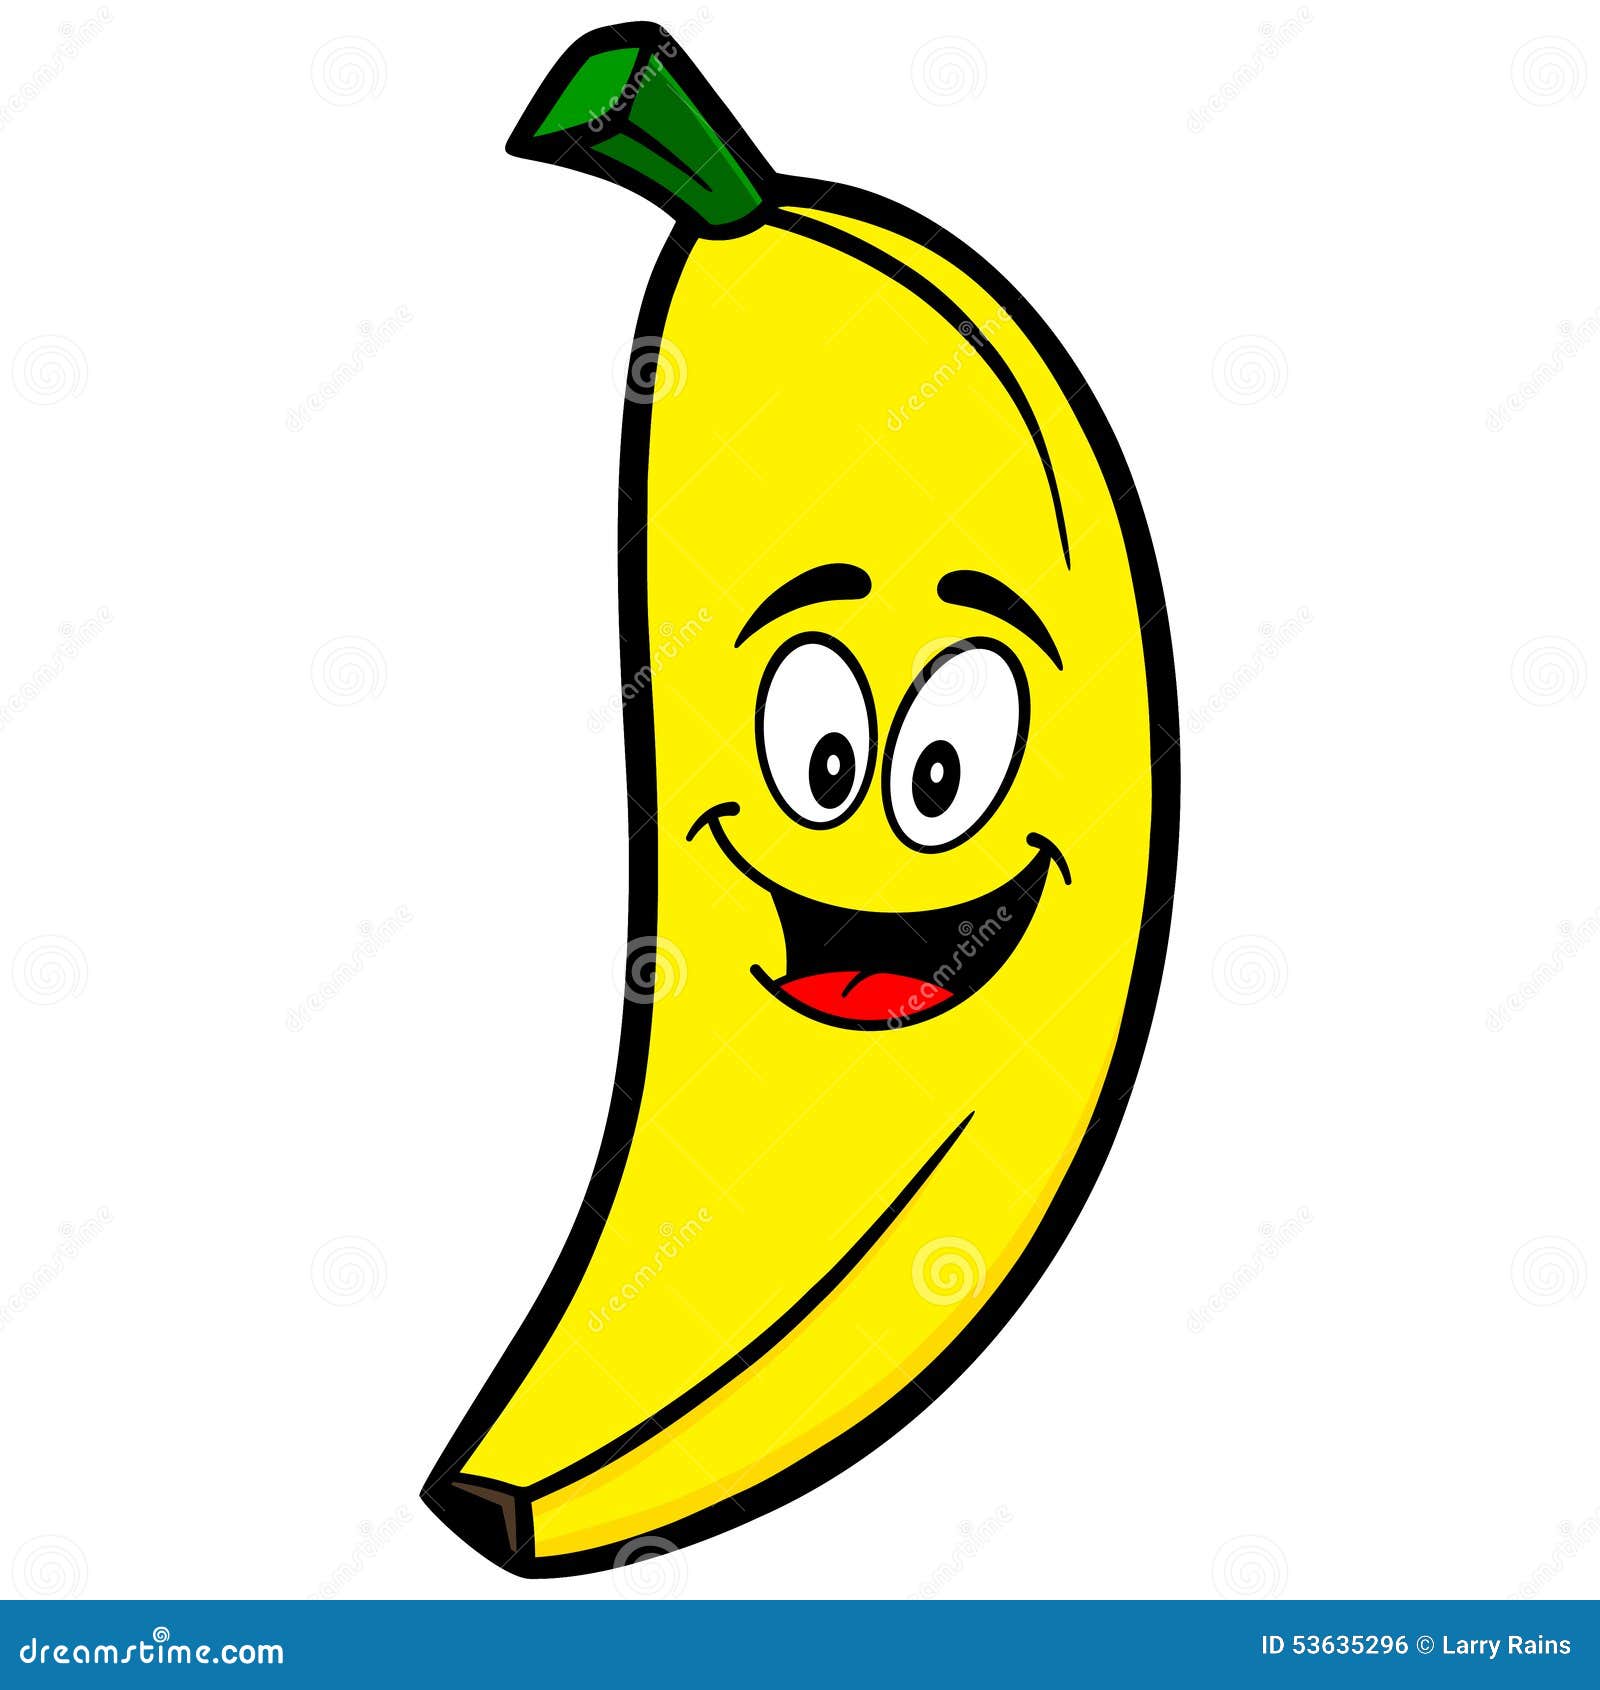 banana cartoon mascot illustration 53635296